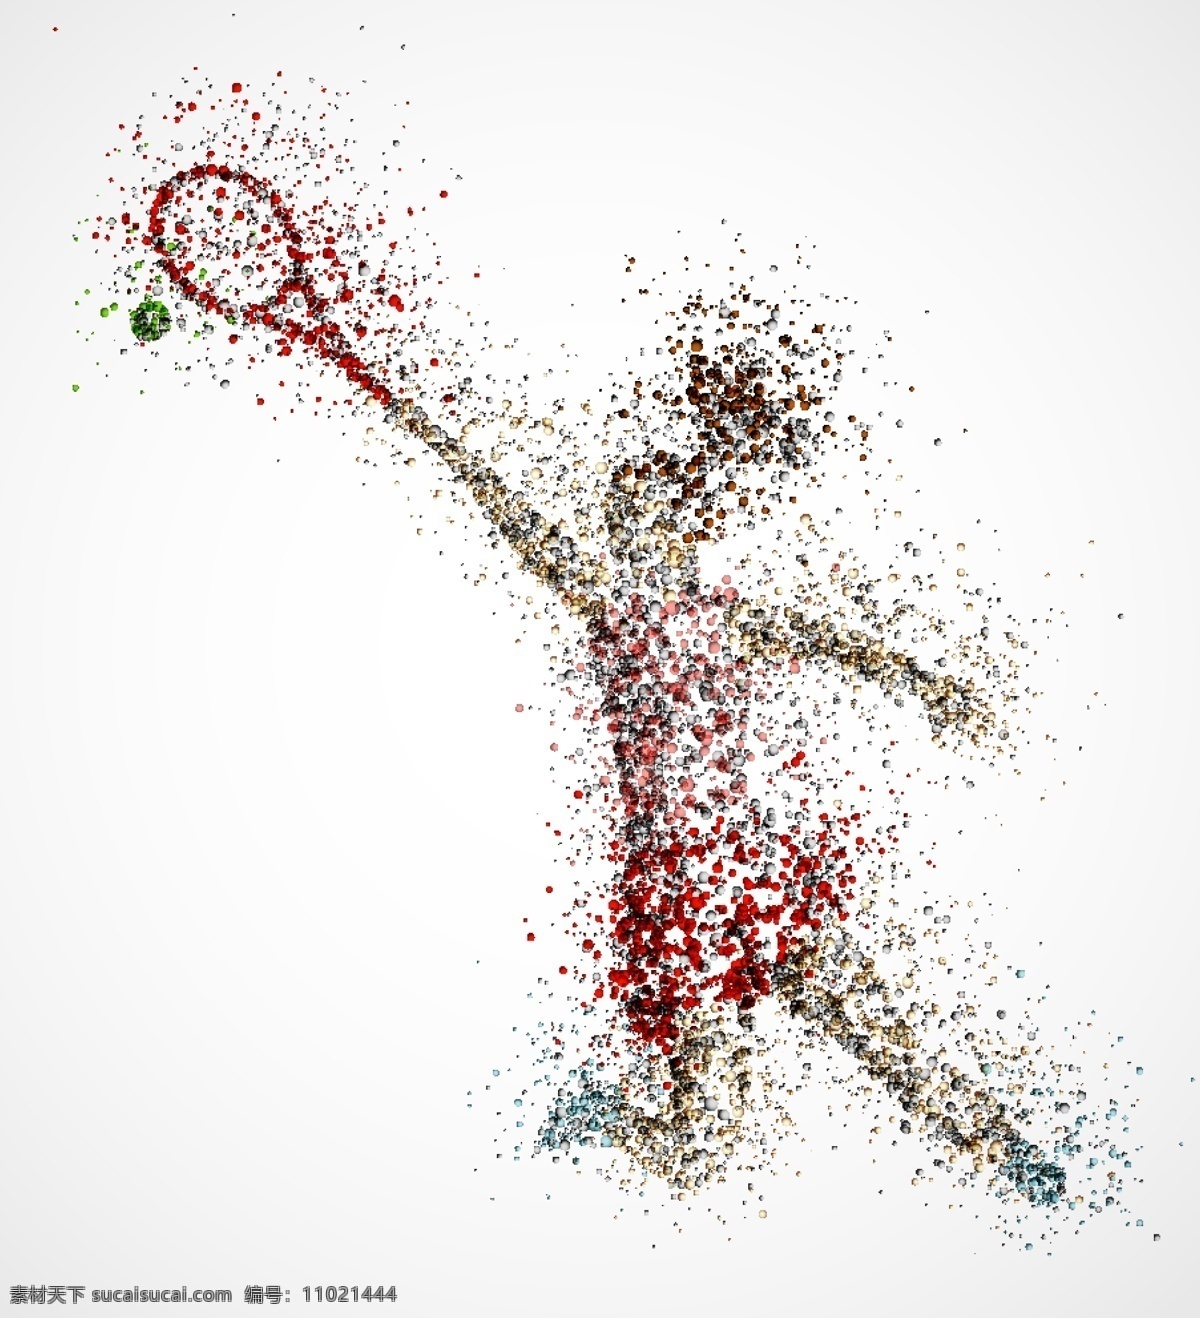 网球 女子 运动员 运动 人物 插画 体育运动员 体育插画 创意抽象插画 印象画 抽象画 其他人物 矢量人物 矢量素材 白色